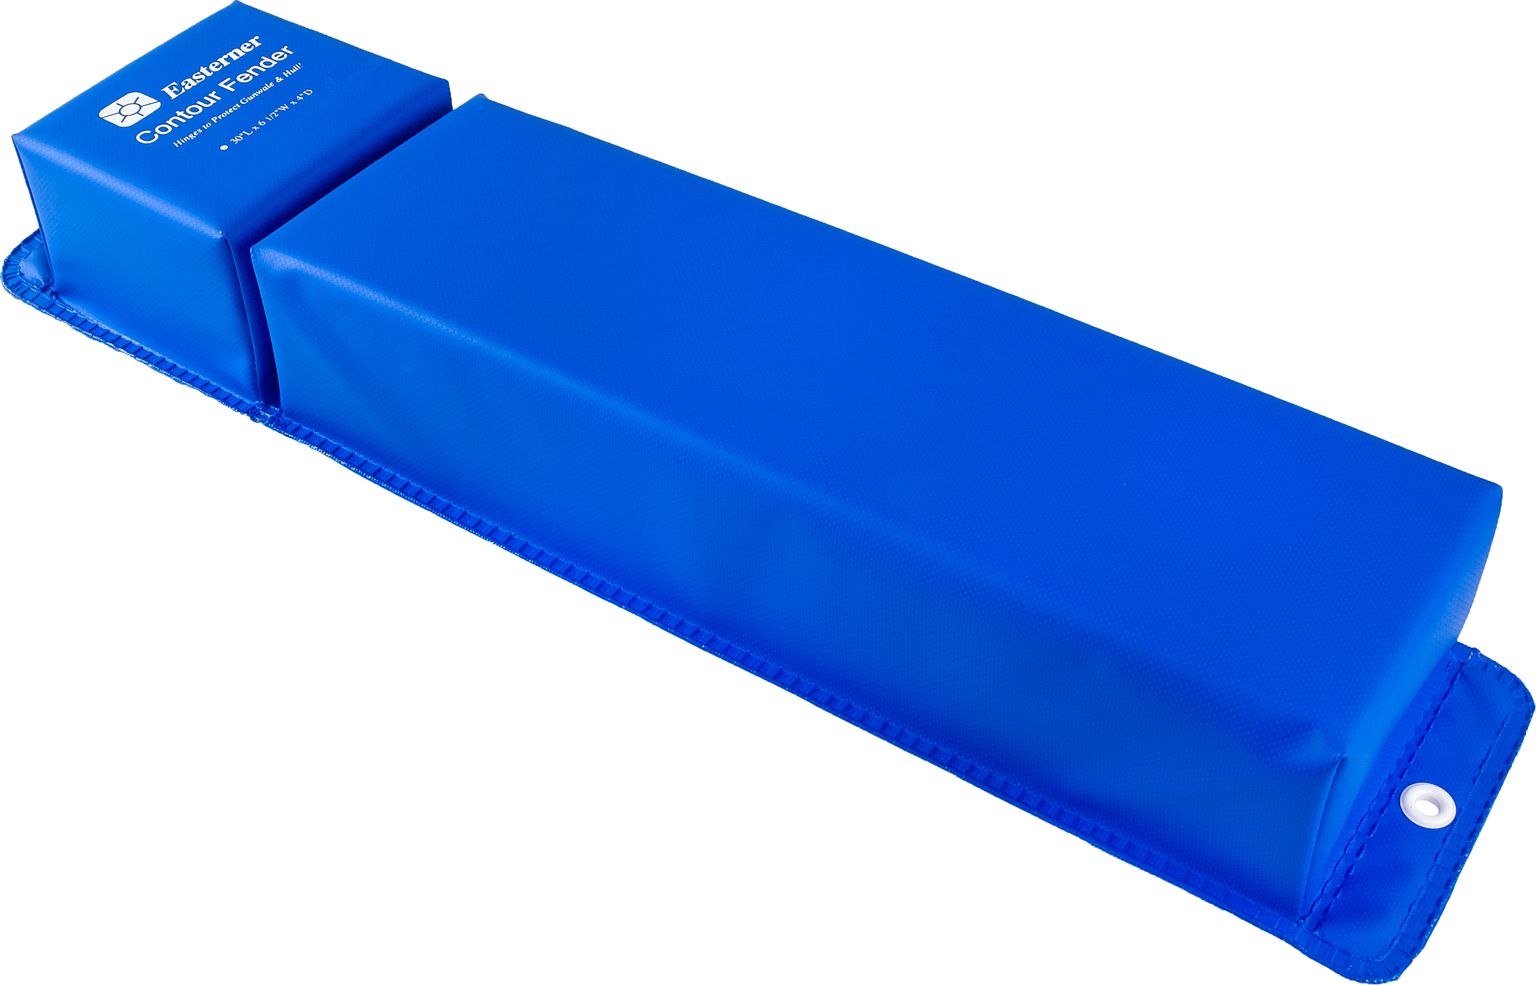 Кранец причальный угловой 760x155 мм, синий (упаковка из 10 шт.) C11930L_pkg_10 кранец причальный угловой 760x155 мм белый упаковка из 10 шт c11930 pkg 10